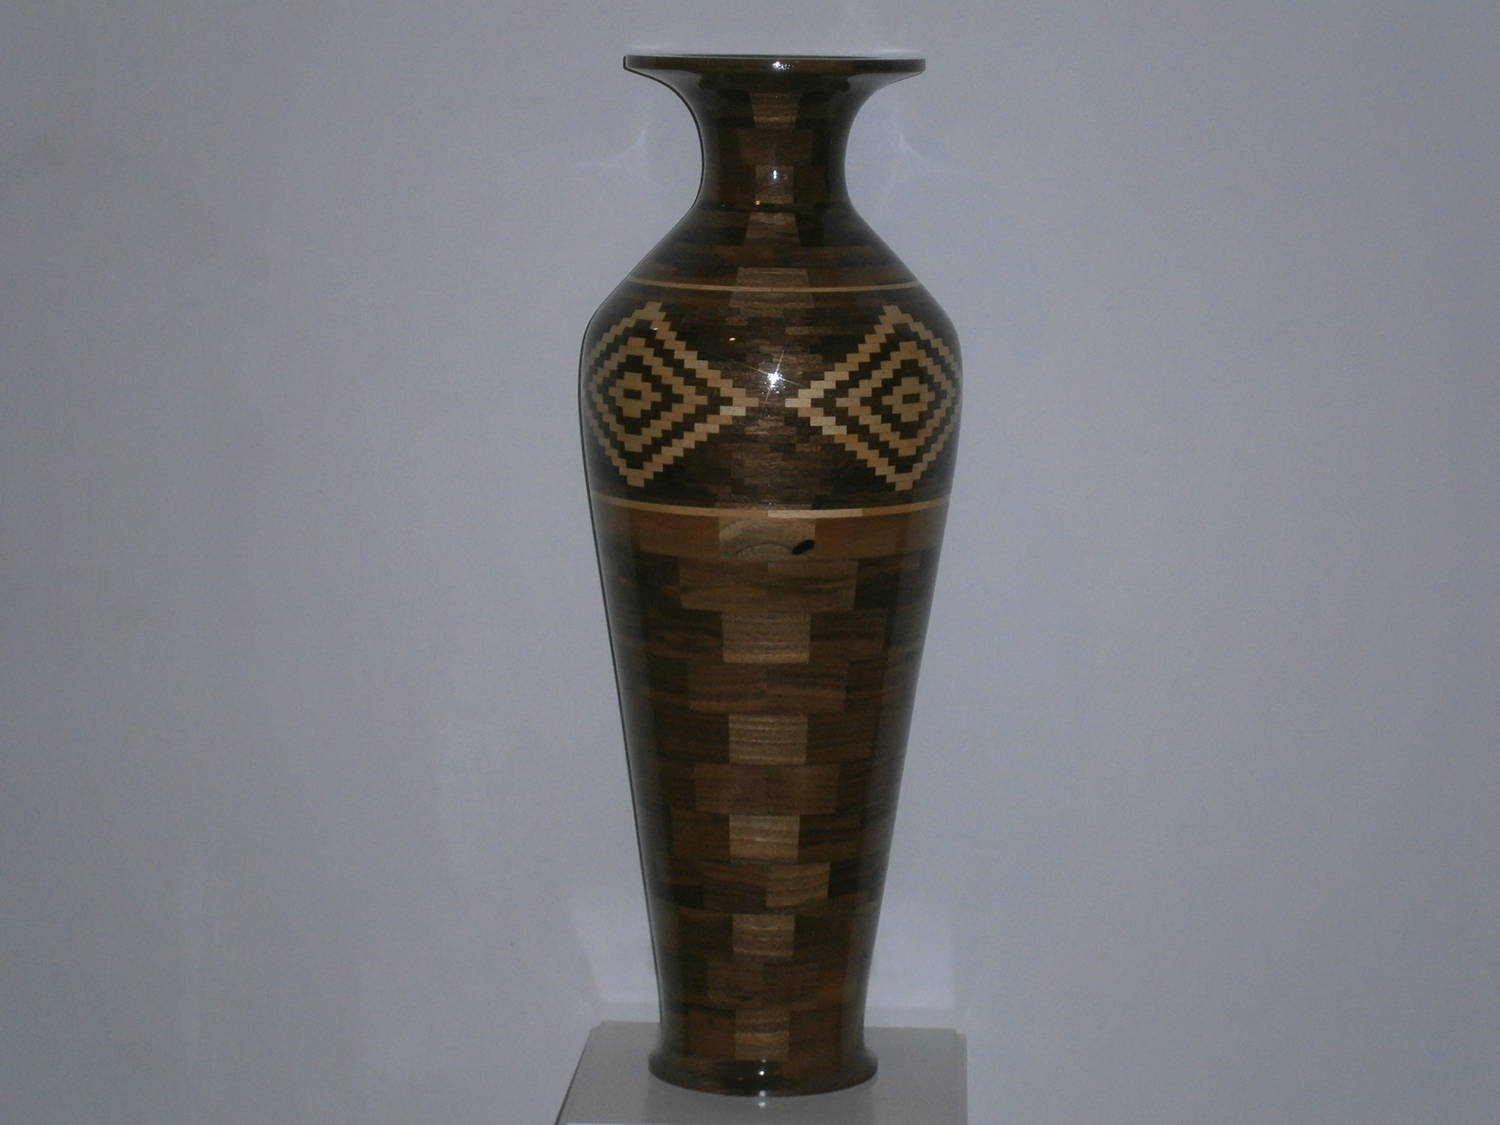 Vase with diamonds